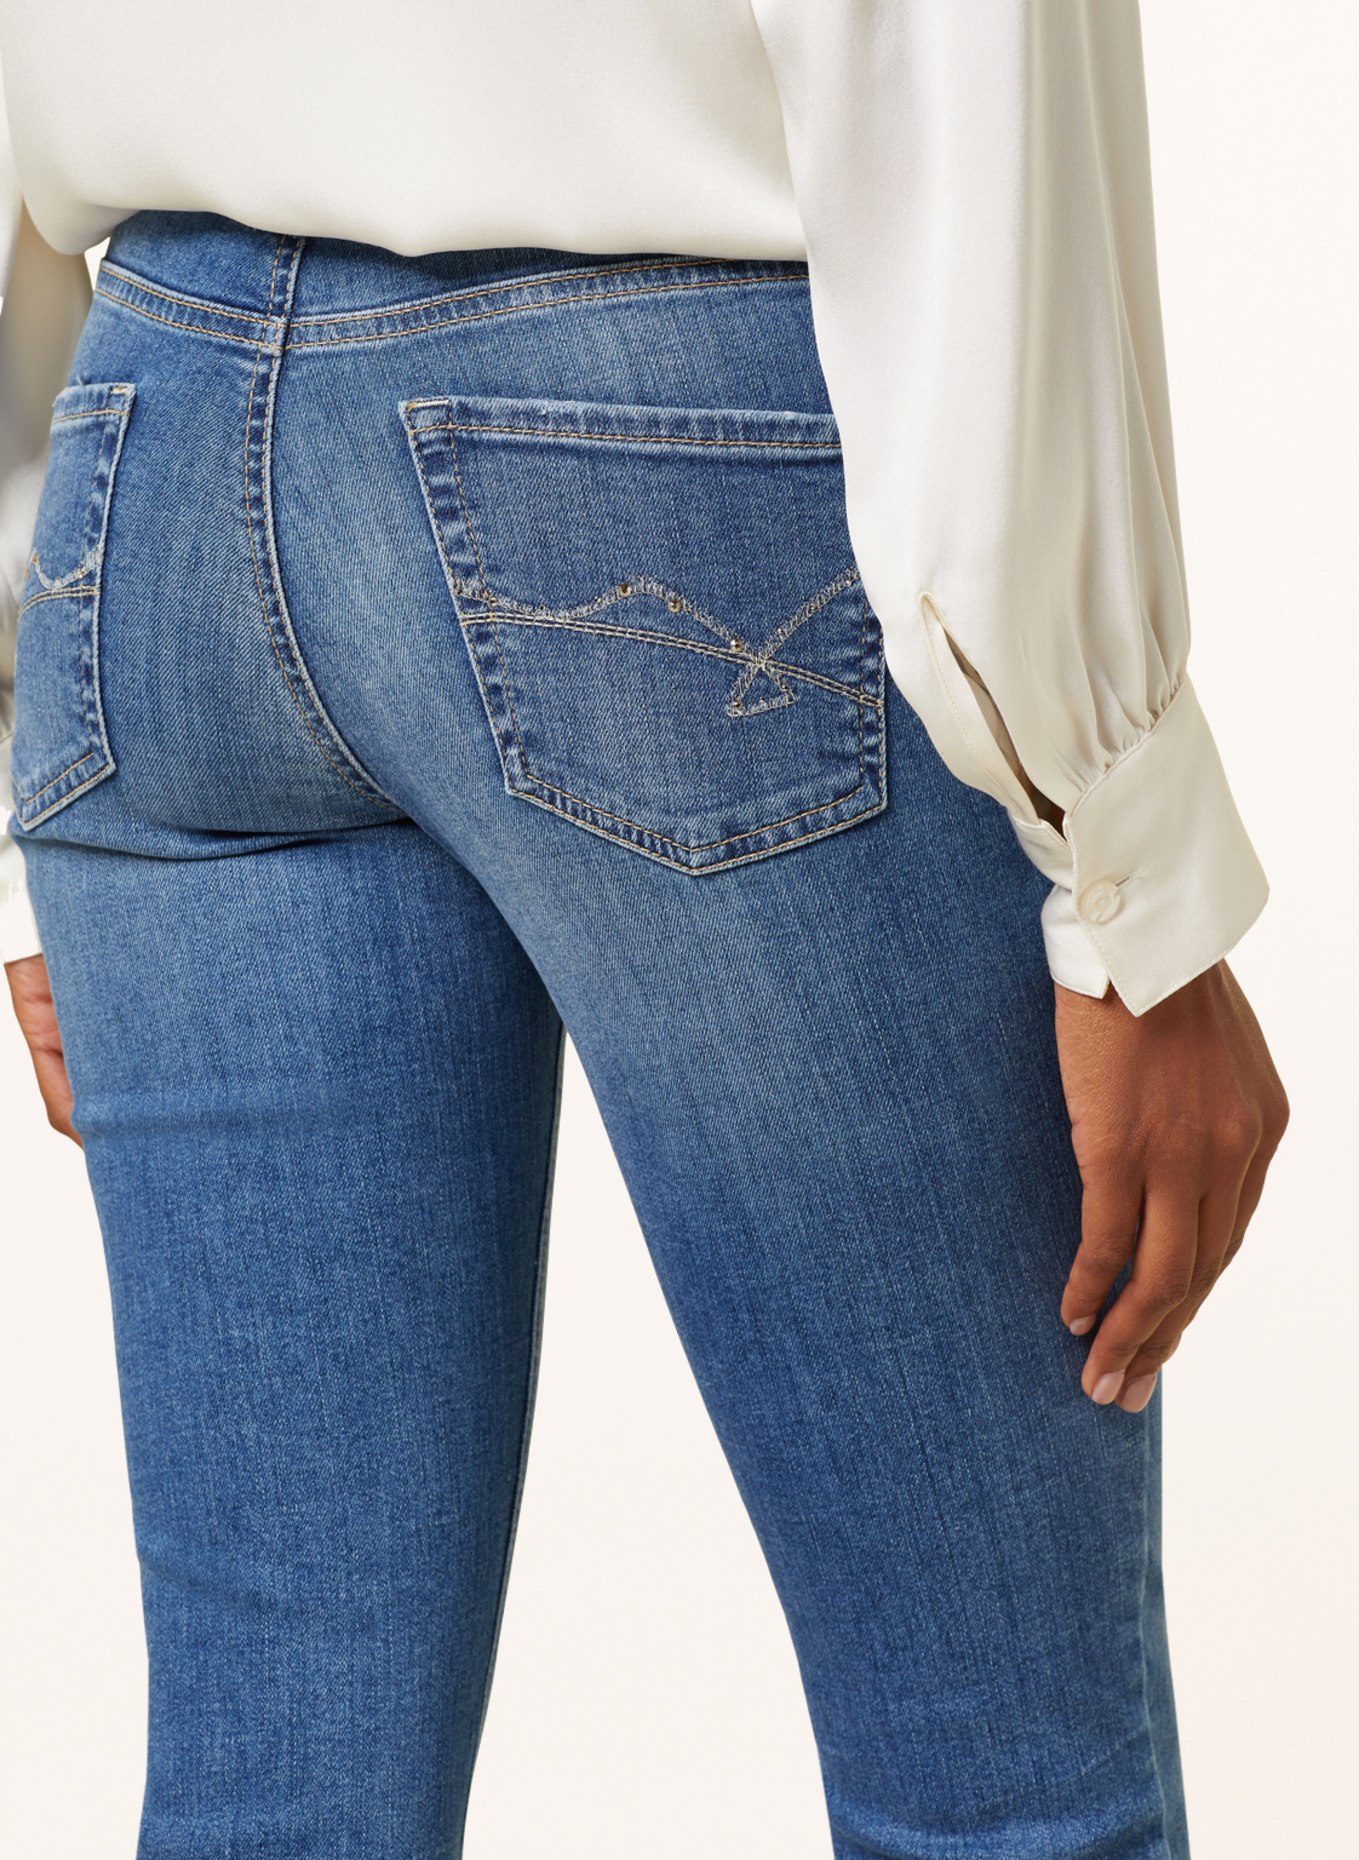 CAMBIO Skinny Jeans PARLA mit Schmucksteinen, Farbe: 5249 contrast used (Bild 5)